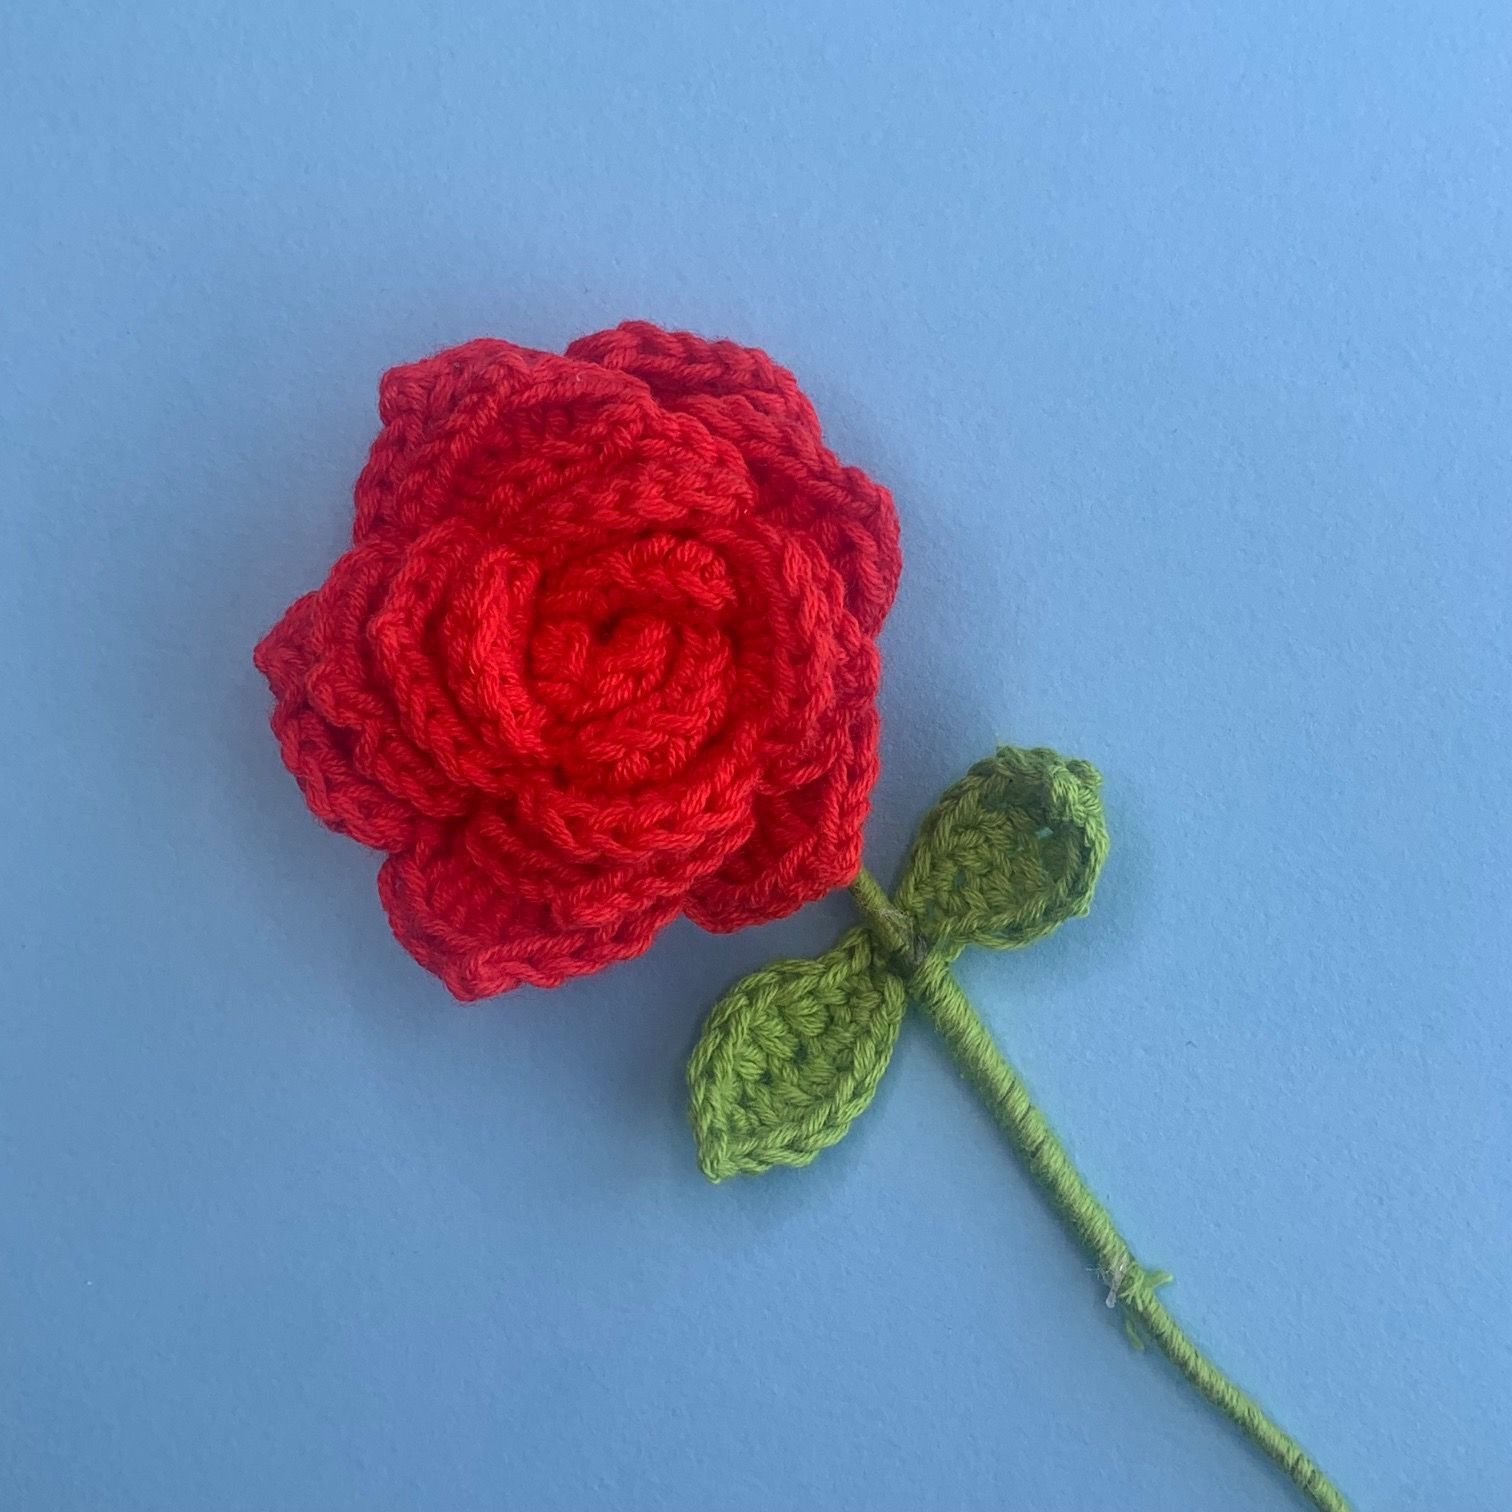 Crochet Rose Free Pattern